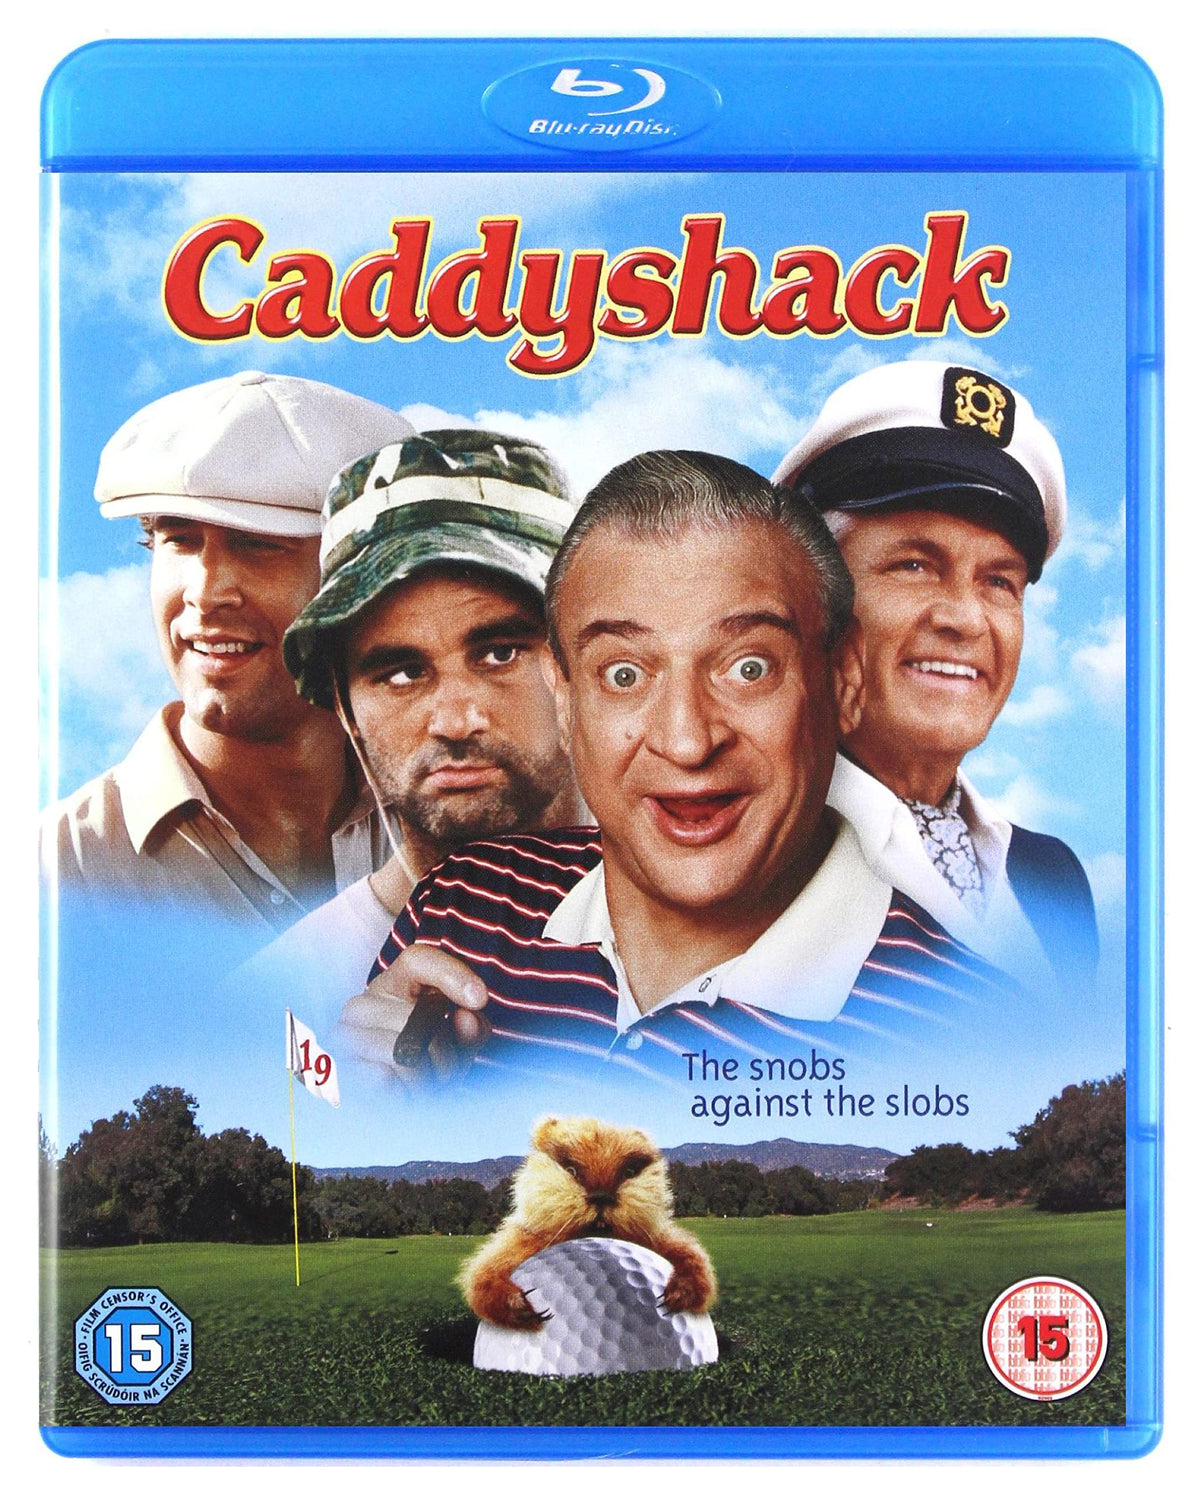 Caddyshack [Blu-ray] [1980] [Region Free]